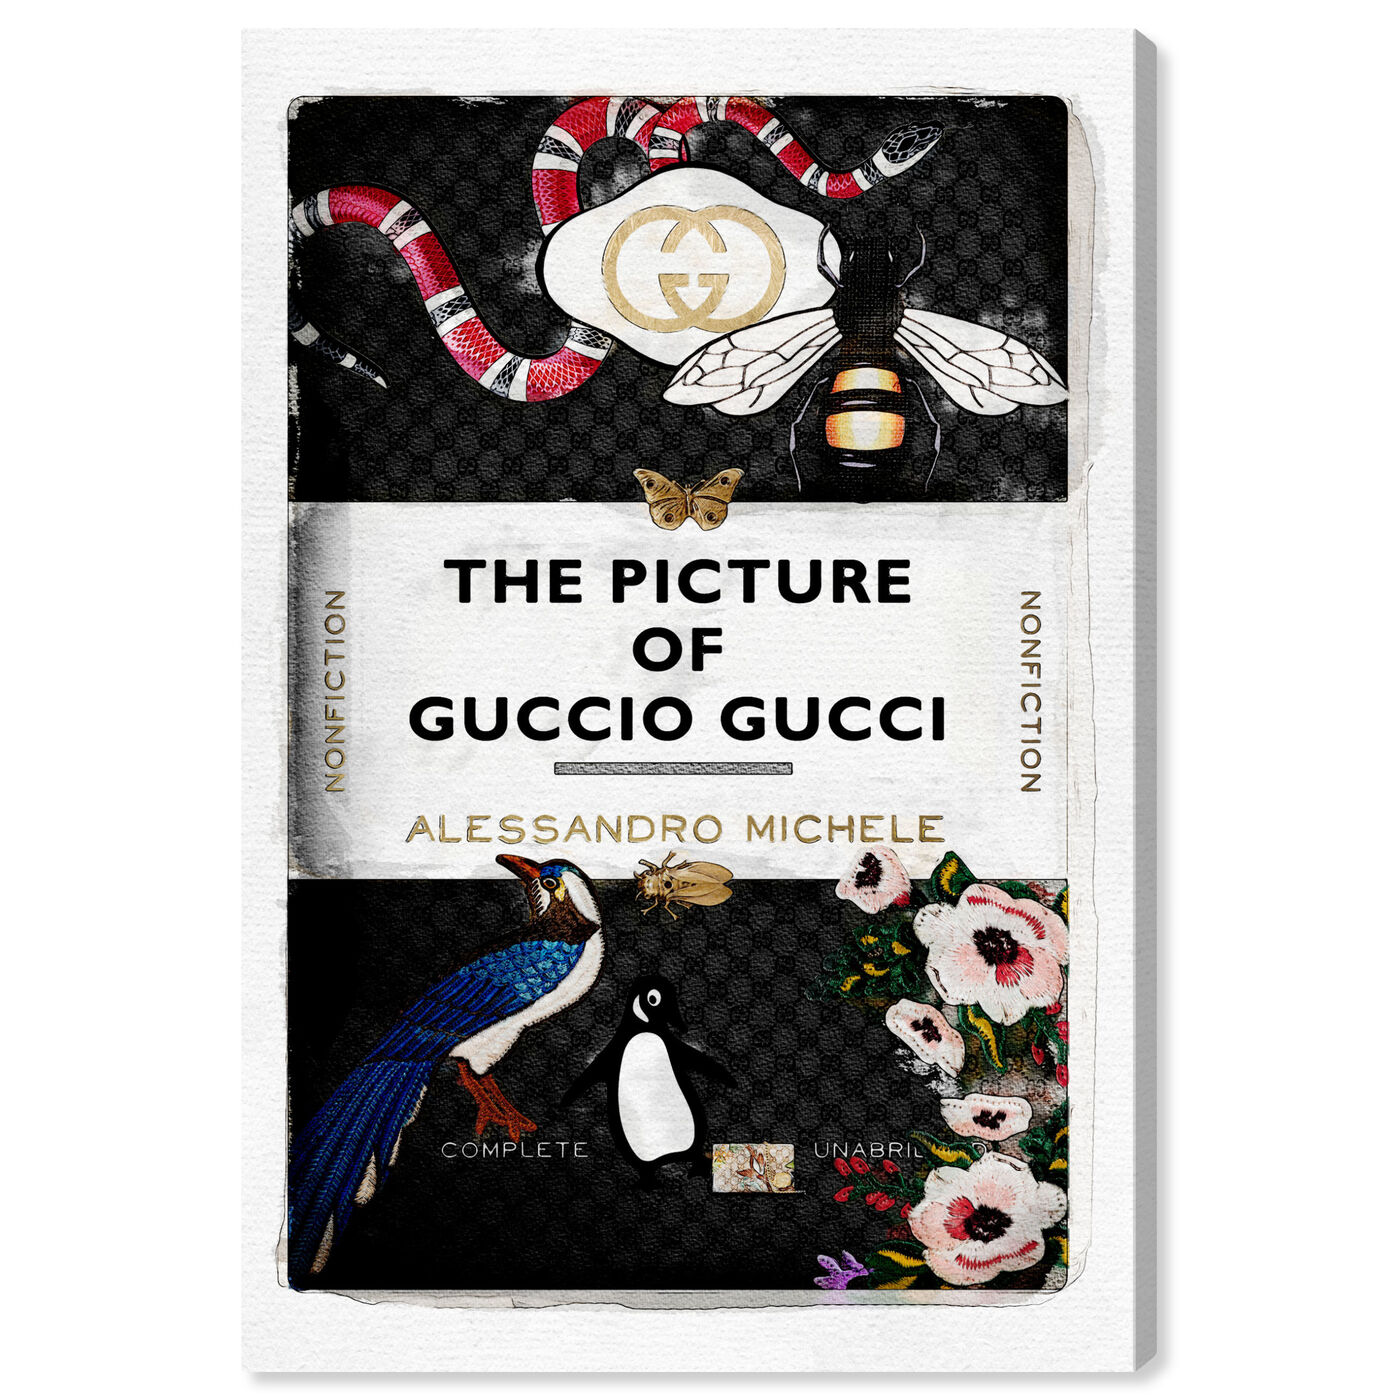 The Italian Luxe Book